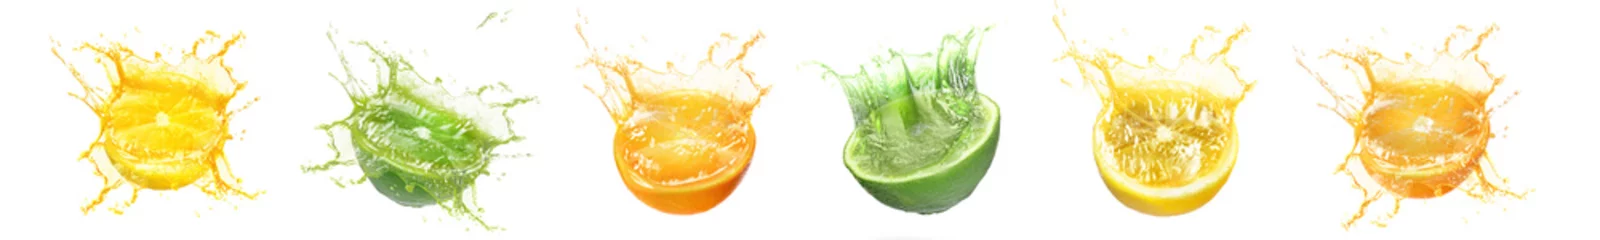 Poster Fresh citrus fruits with splashing juice on white background, set © New Africa